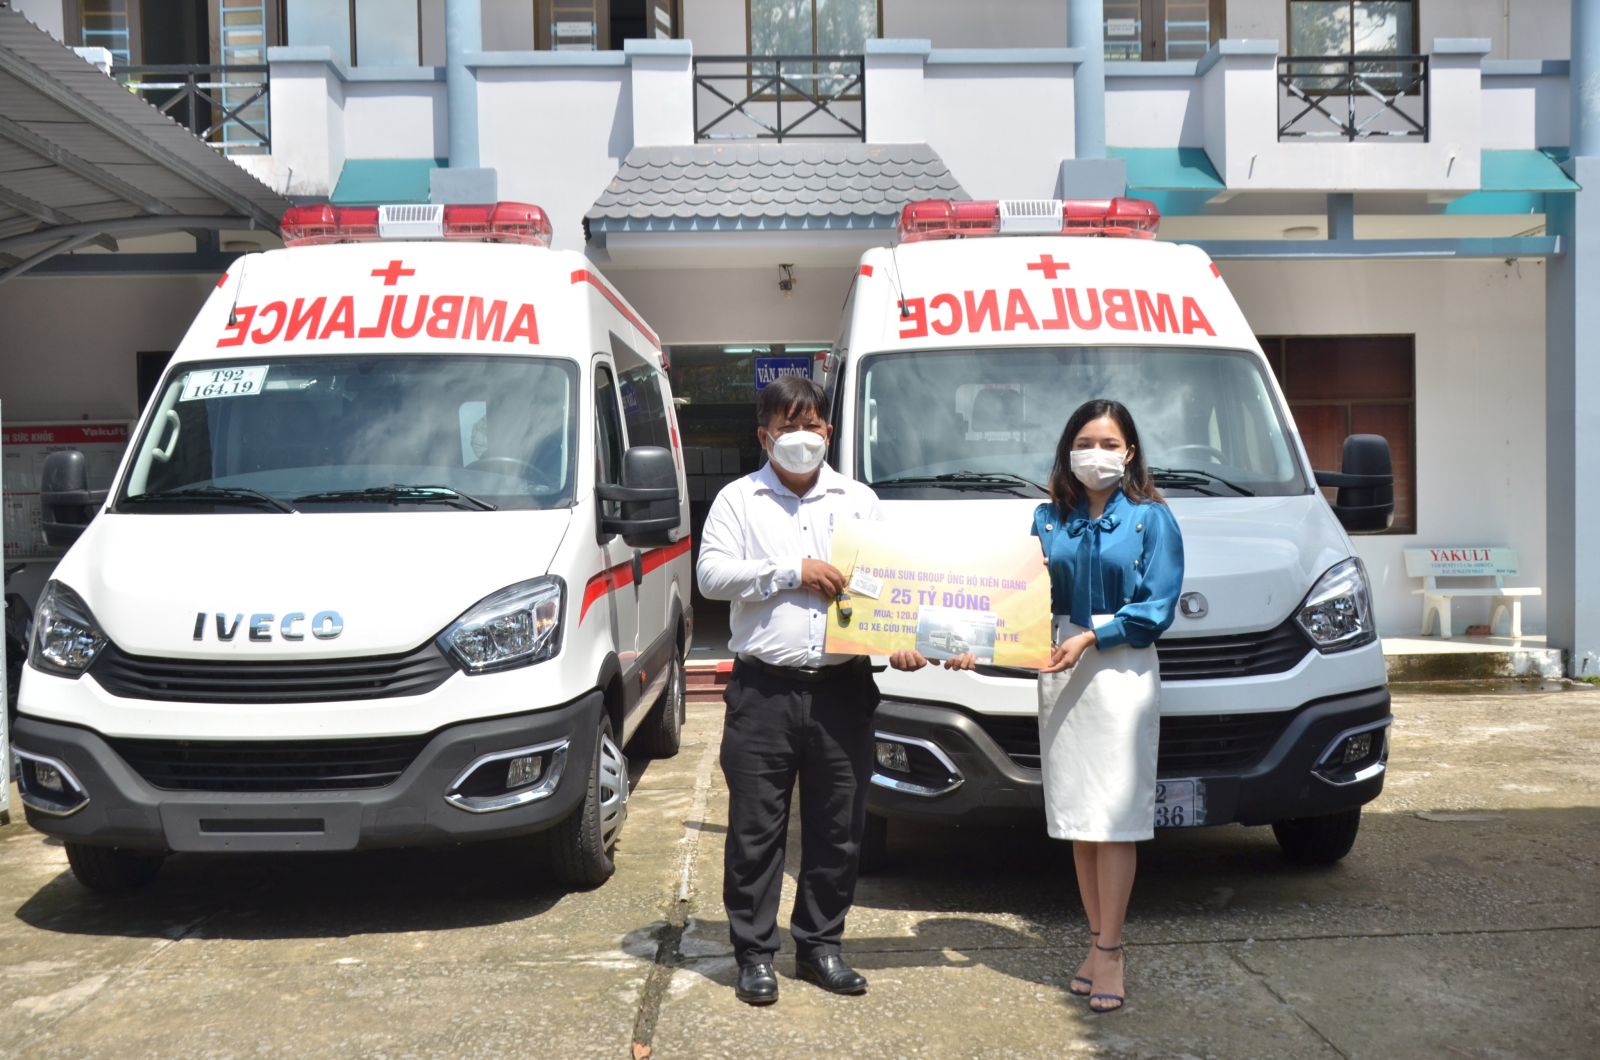 Sở Y tế Kiên Giang đã phân bổ 3 xe cứu thương do Sun Group tài trợ về cho huyện Vĩnh Thuận, Gò Quao và TP. Hà Tiên để kịp thời phục vụ công tác phòng, chống dịch